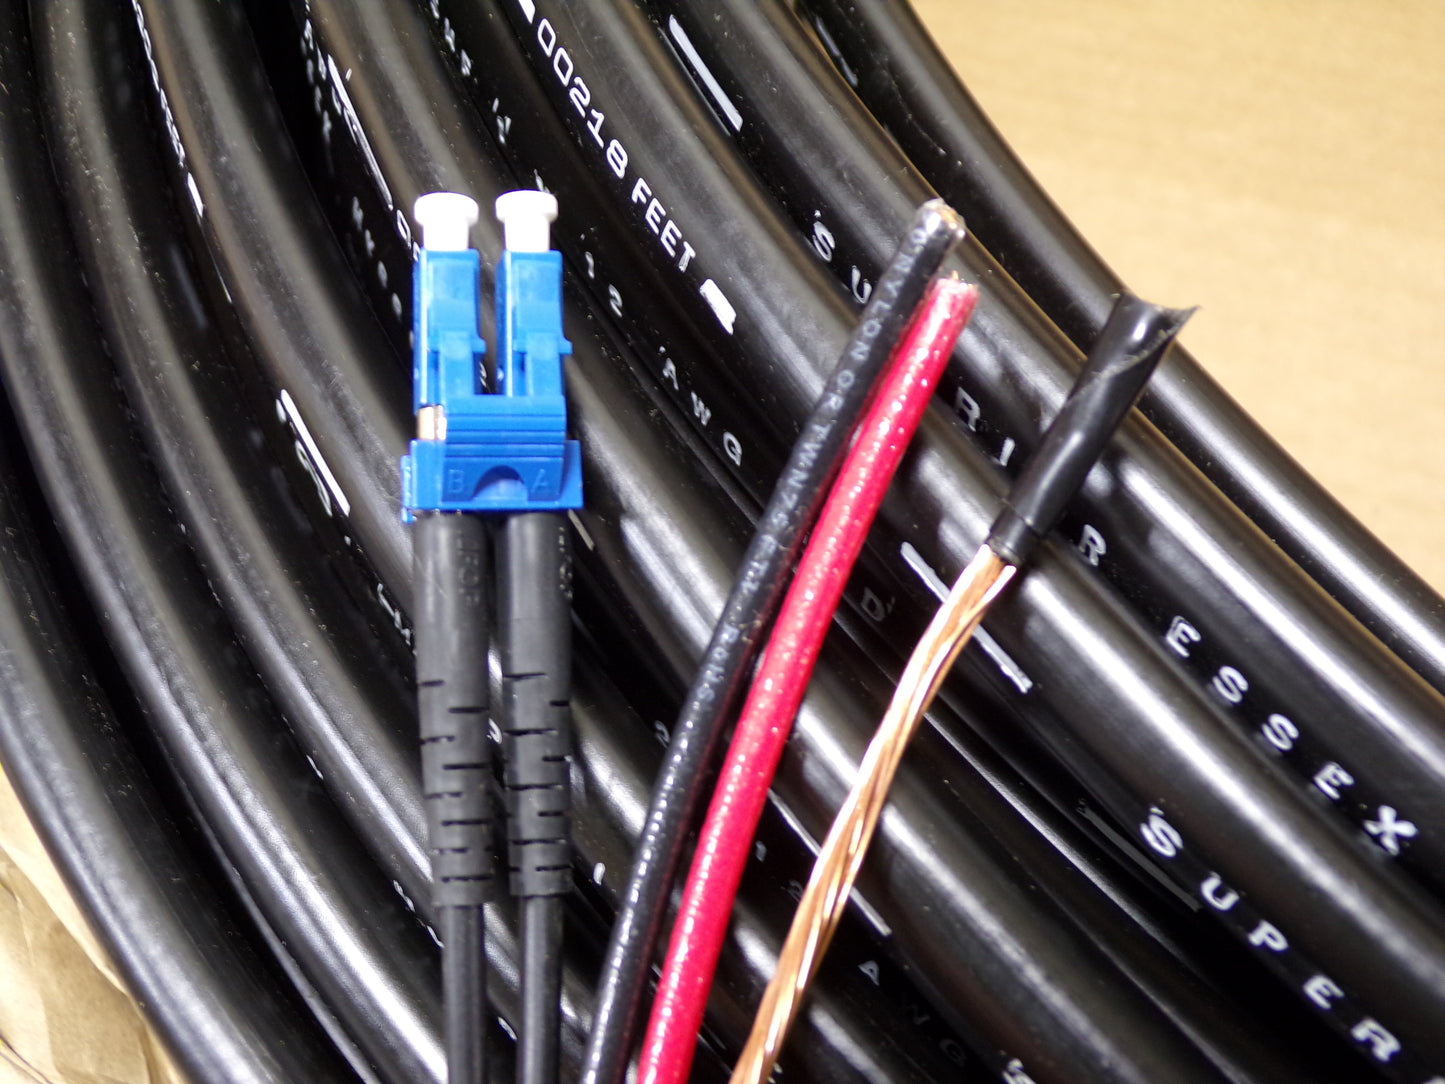 Superior Essex Hybrid Cable, 2 Fiber, 2-12AWG Copper, 1 Ground, 240 Feet Length (CR00713-WTA19)